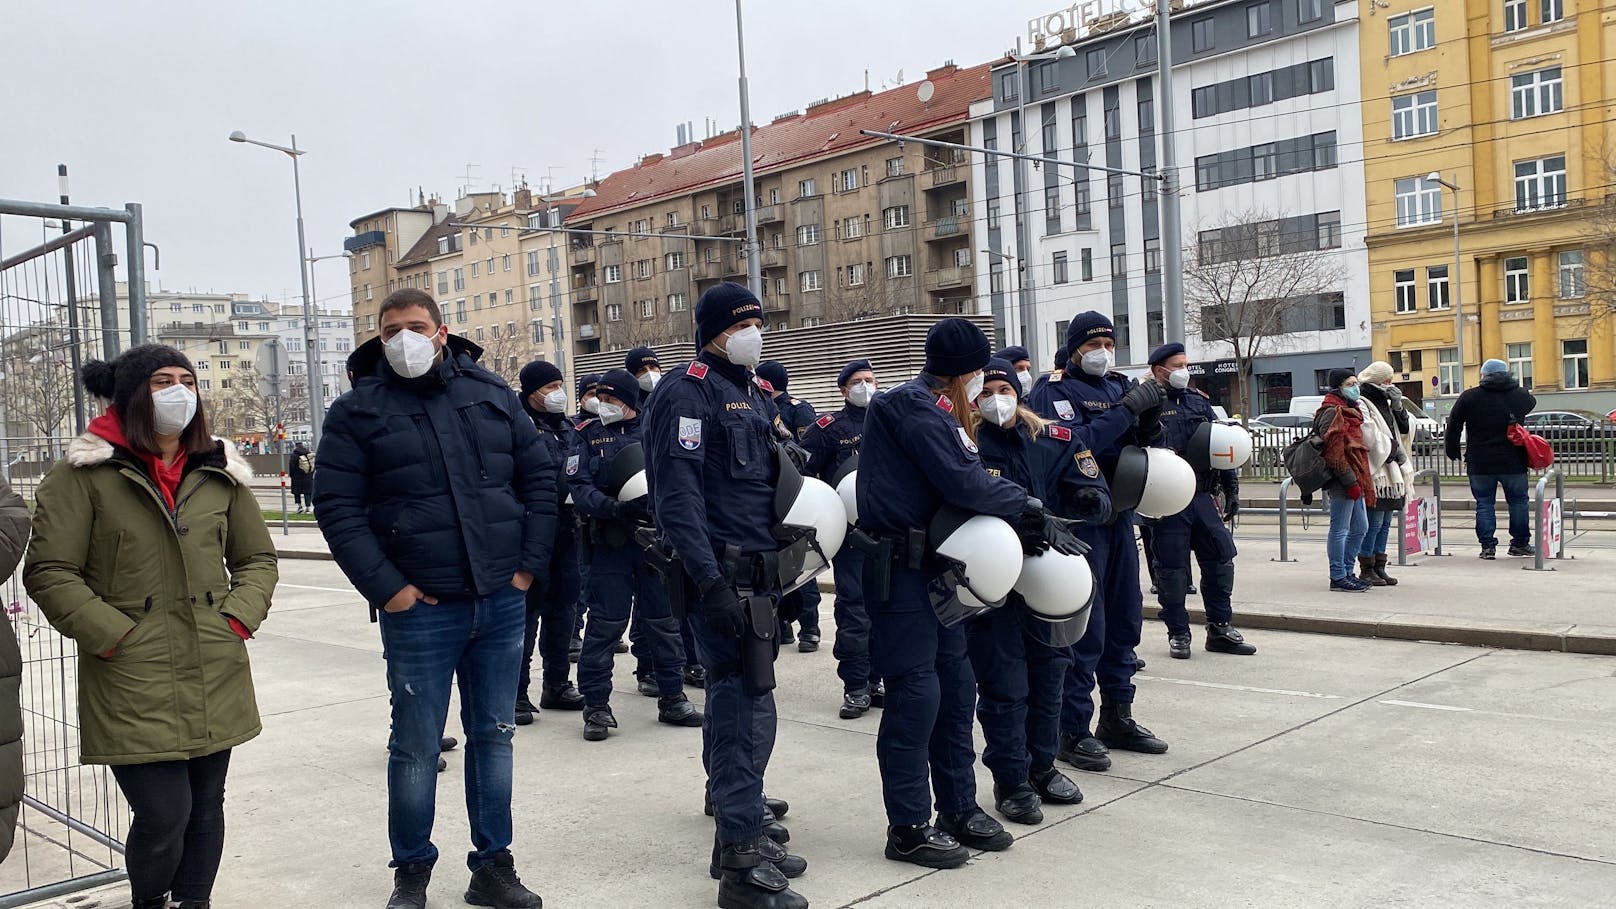 In Wien finden am Samstag gleich mehrere Demonstrationen gegen die Corona-Maßnahmen statt. Die Polizei ist gerüstet.